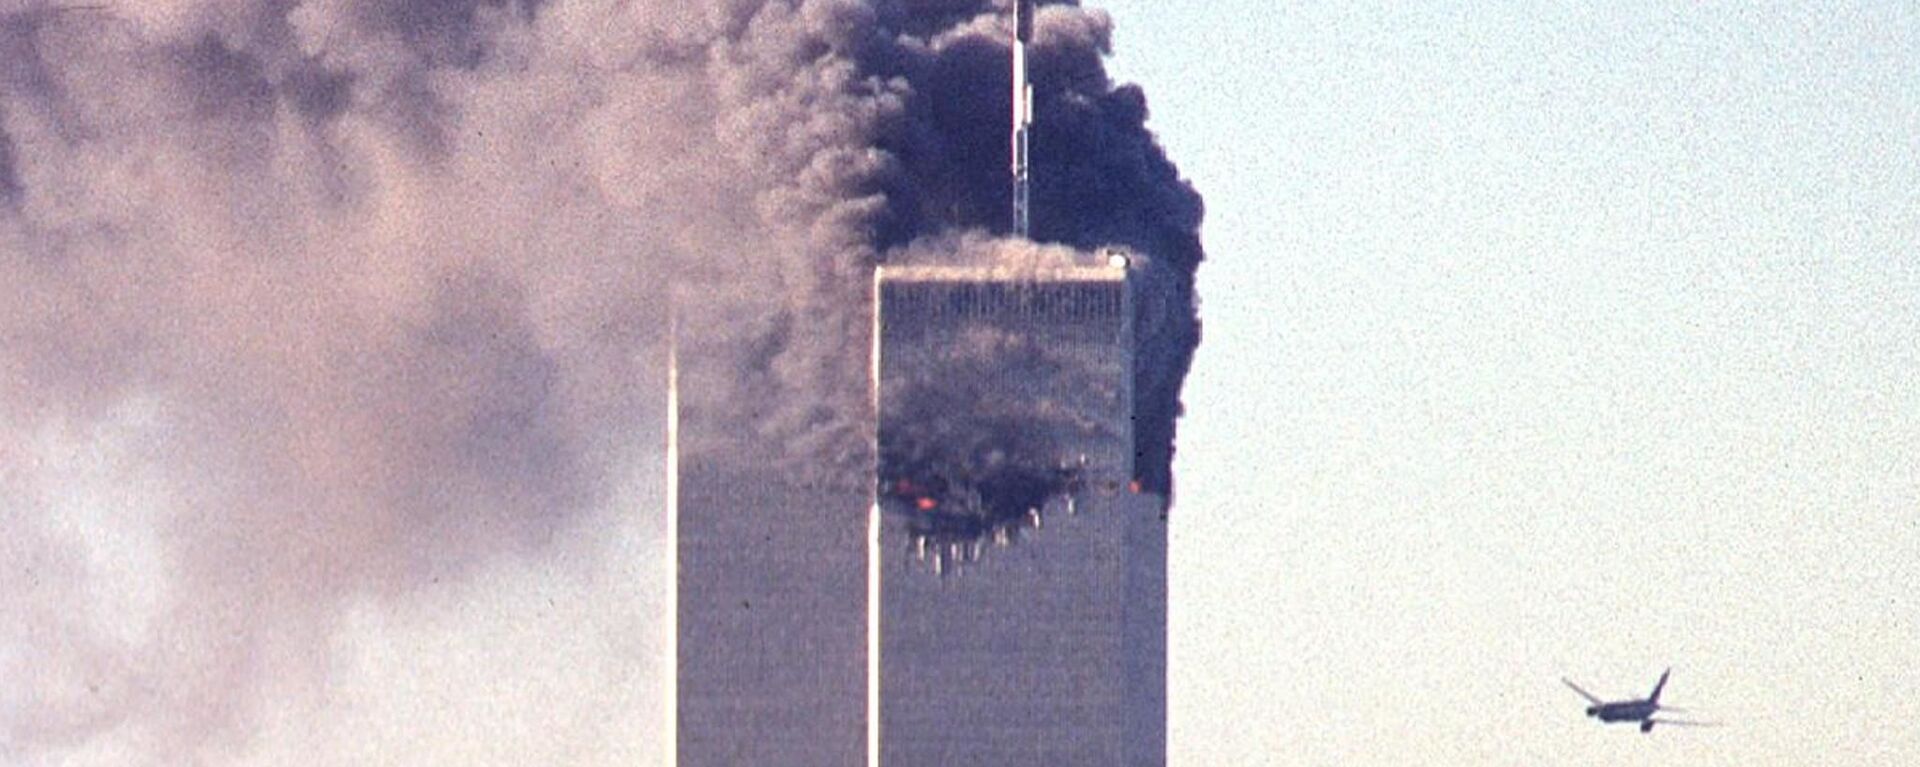 Atentado terrorista del 11 de septiembre de 2001 en Nueva York - Sputnik Mundo, 1920, 12.09.2021